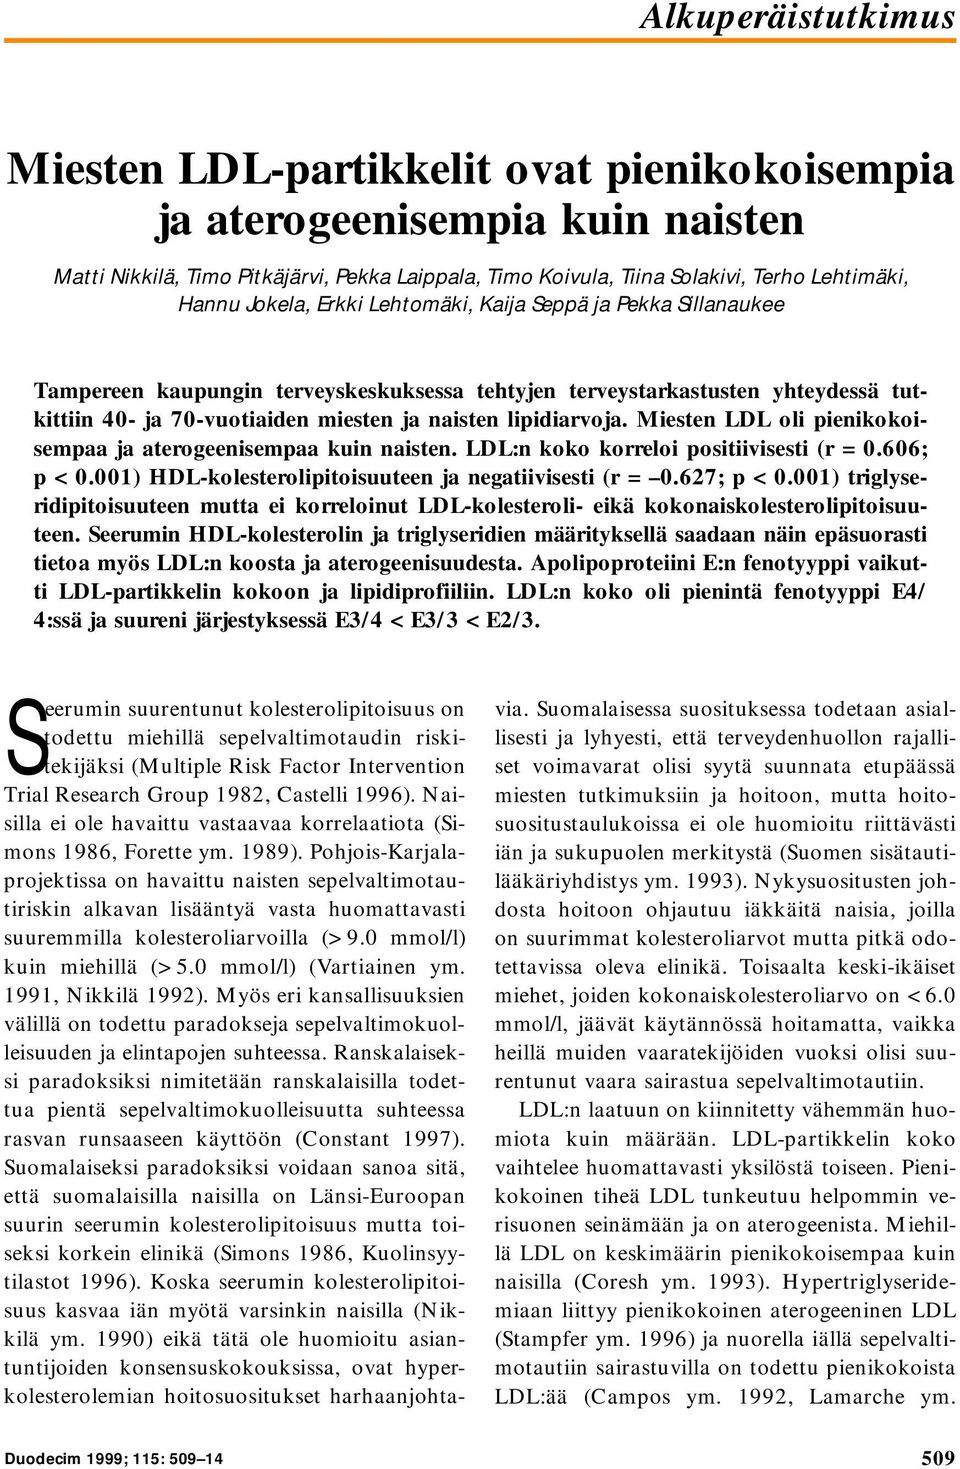 lipidiarvoja. Miesten LDL oli pienikokoisempaa ja aterogeenisempaa kuin naisten. LDL:n koko korreloi positiivisesti (r = 0.606; p < 0.001) HDL-kolesterolipitoisuuteen ja negatiivisesti (r = 0.